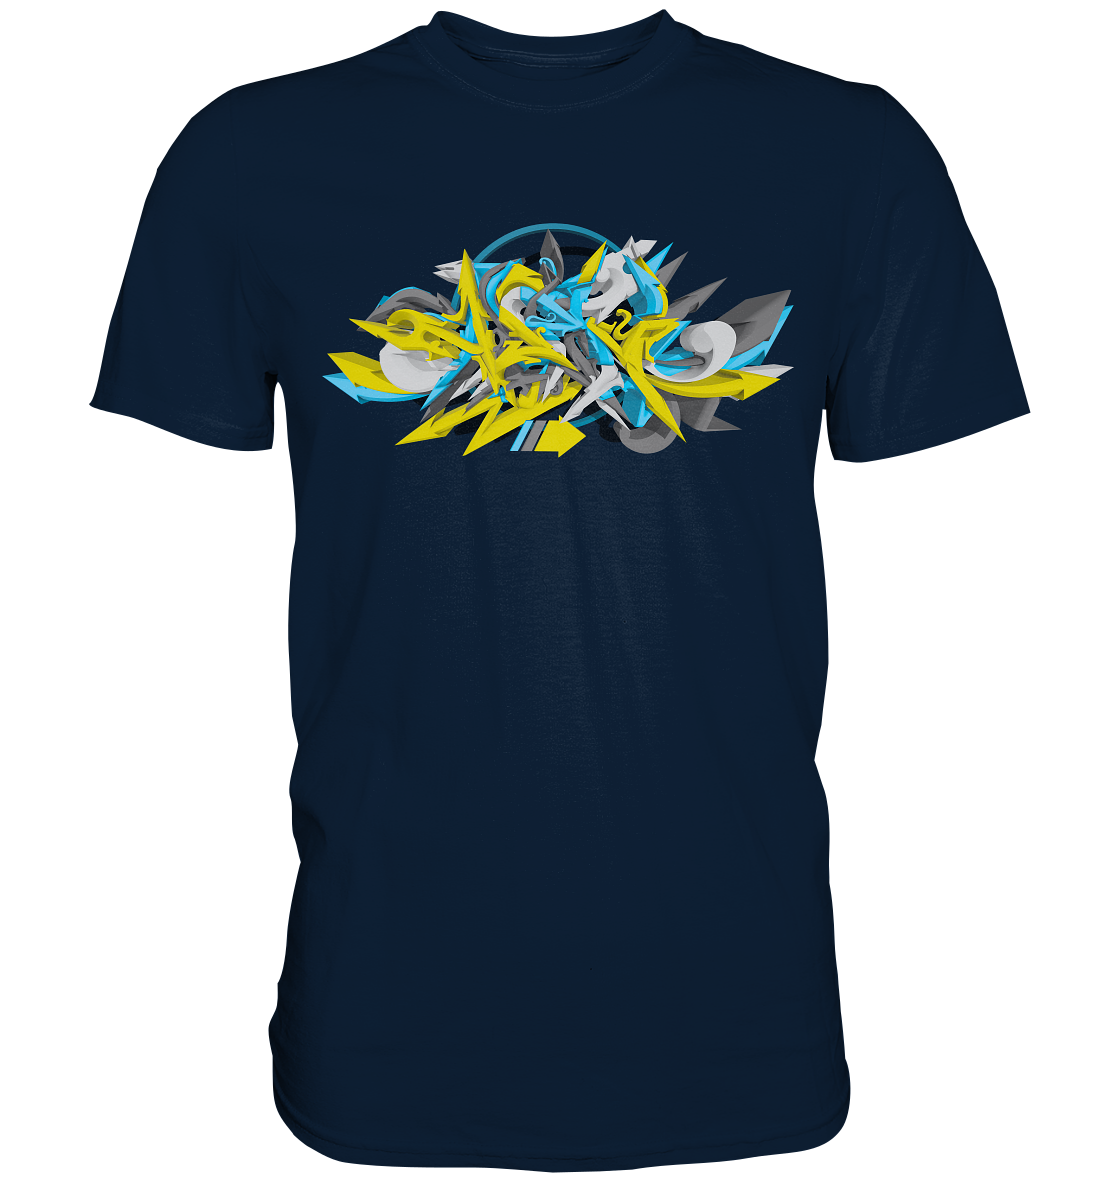 Turbo Blue Yellow Graffiti Art - Premium Shirt